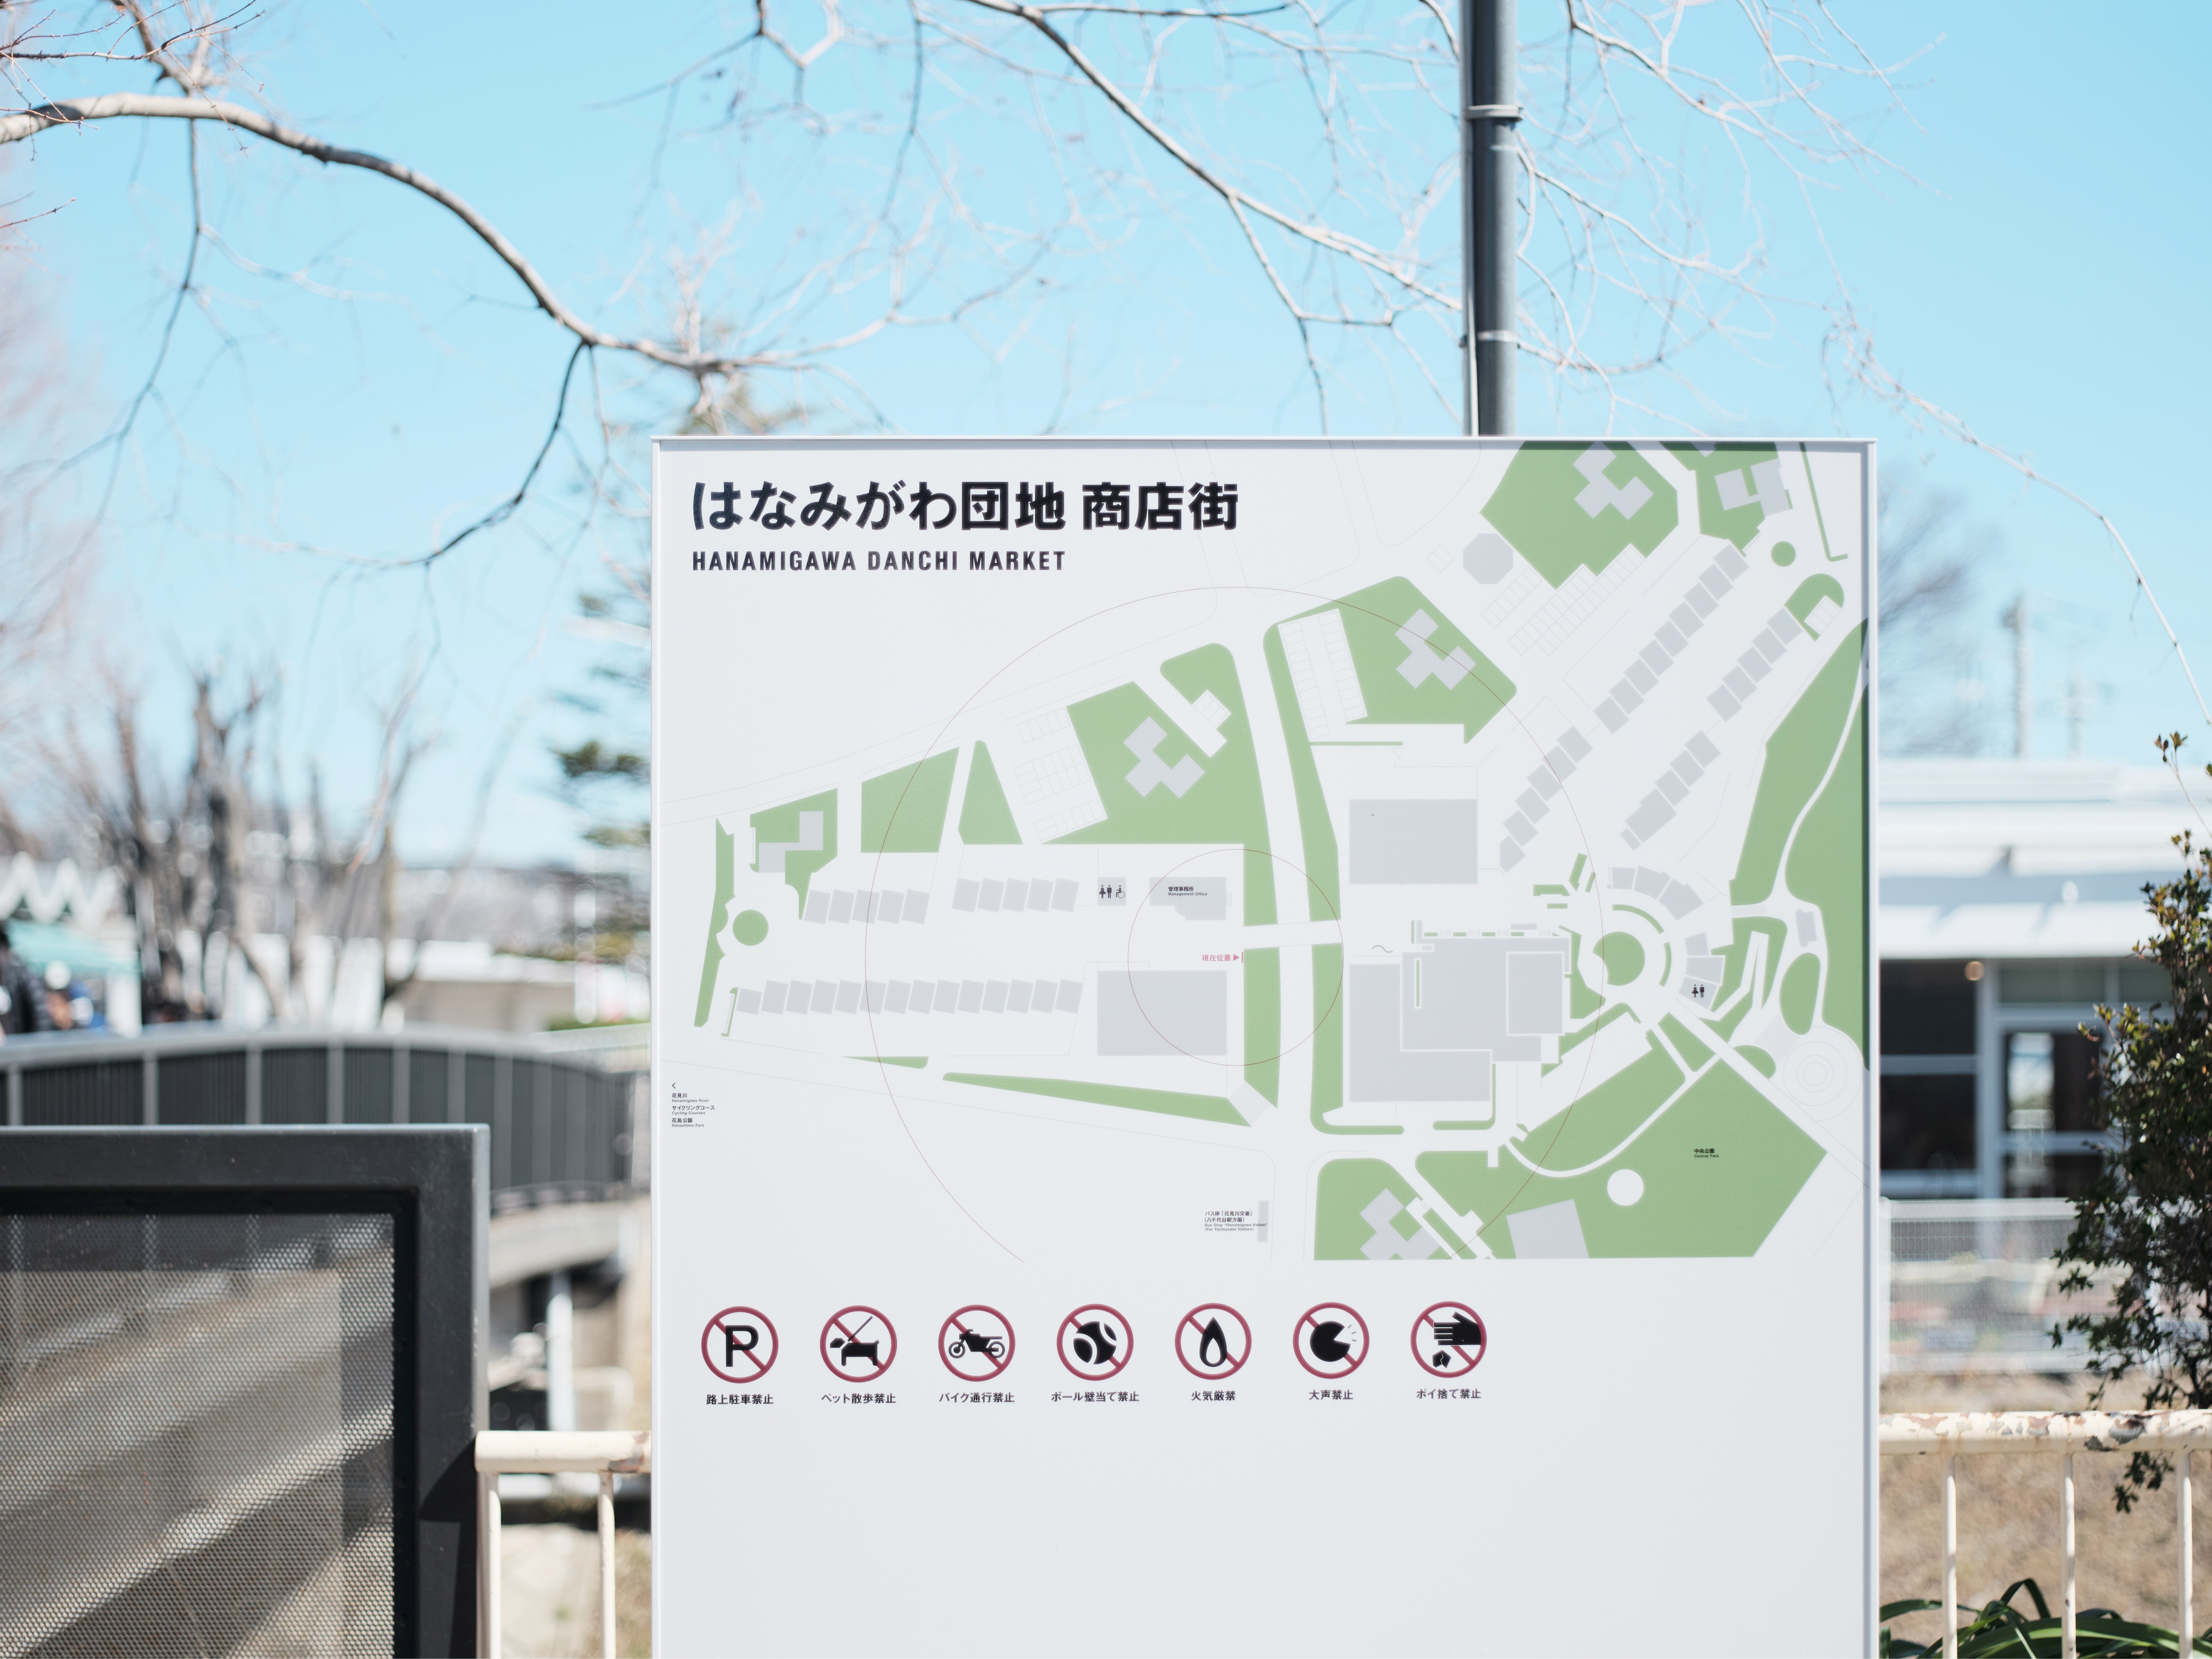  花見川団地商店街MAP・サイン